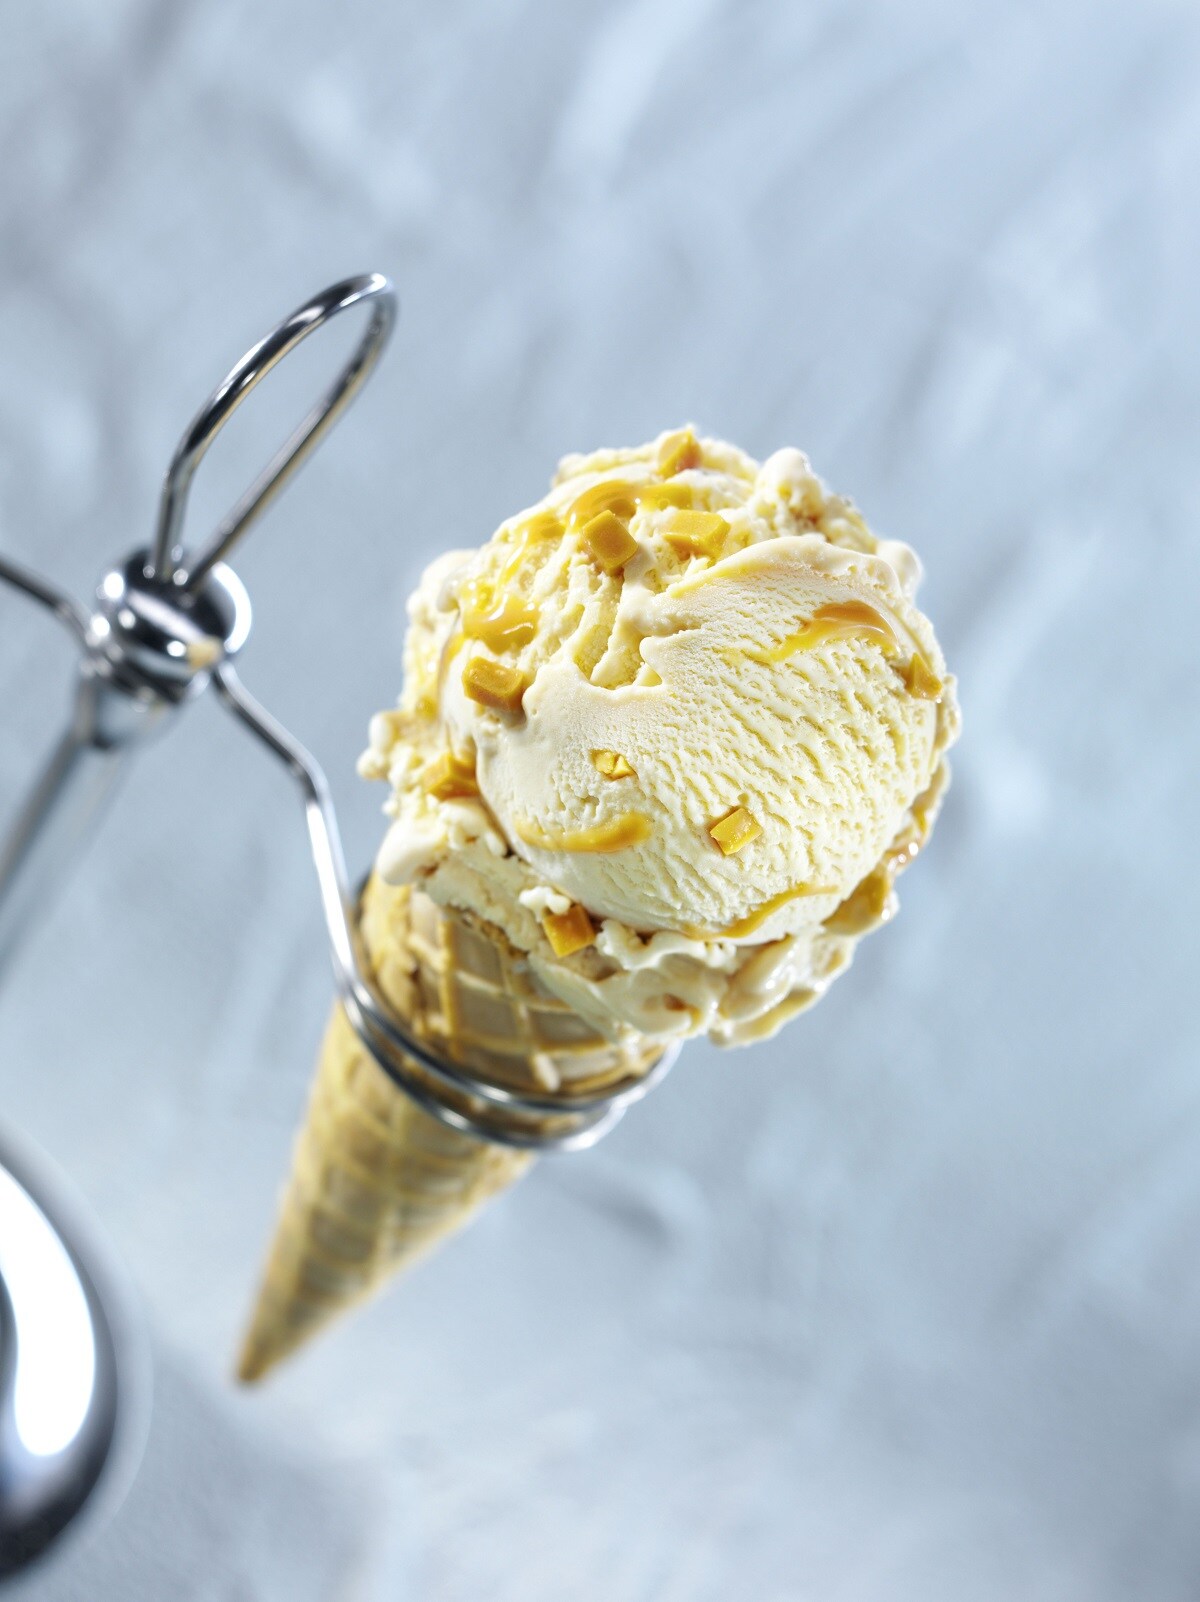 Magnifico: Karamell-Eiscreme mit feiner Meersalznote | bofrost*Presse